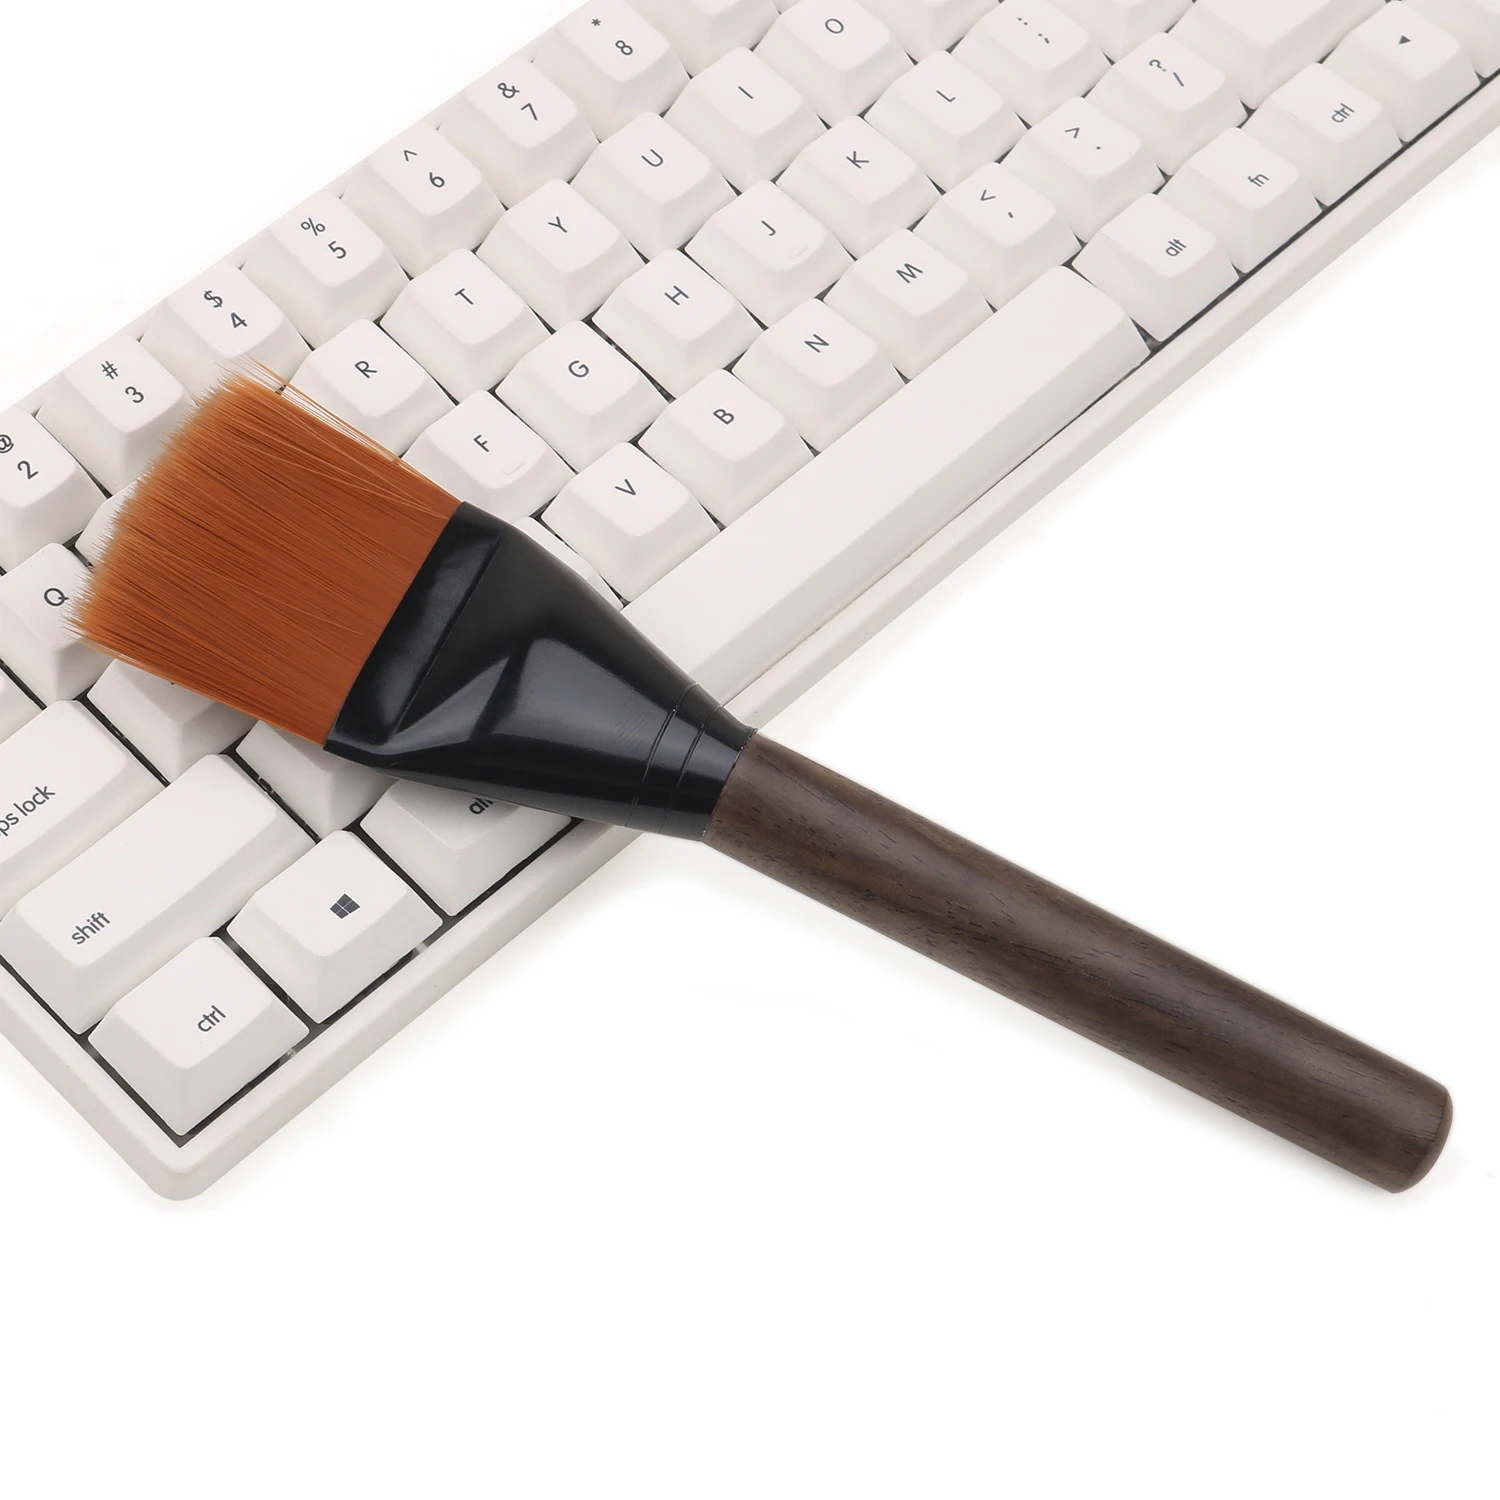 Cepillo de limpieza para teclado mecánico, sandalia antipolvo de madera, nailon y lana, tamaño de 20x4,5 cm, para Notebook, portátil, Macbook y PC